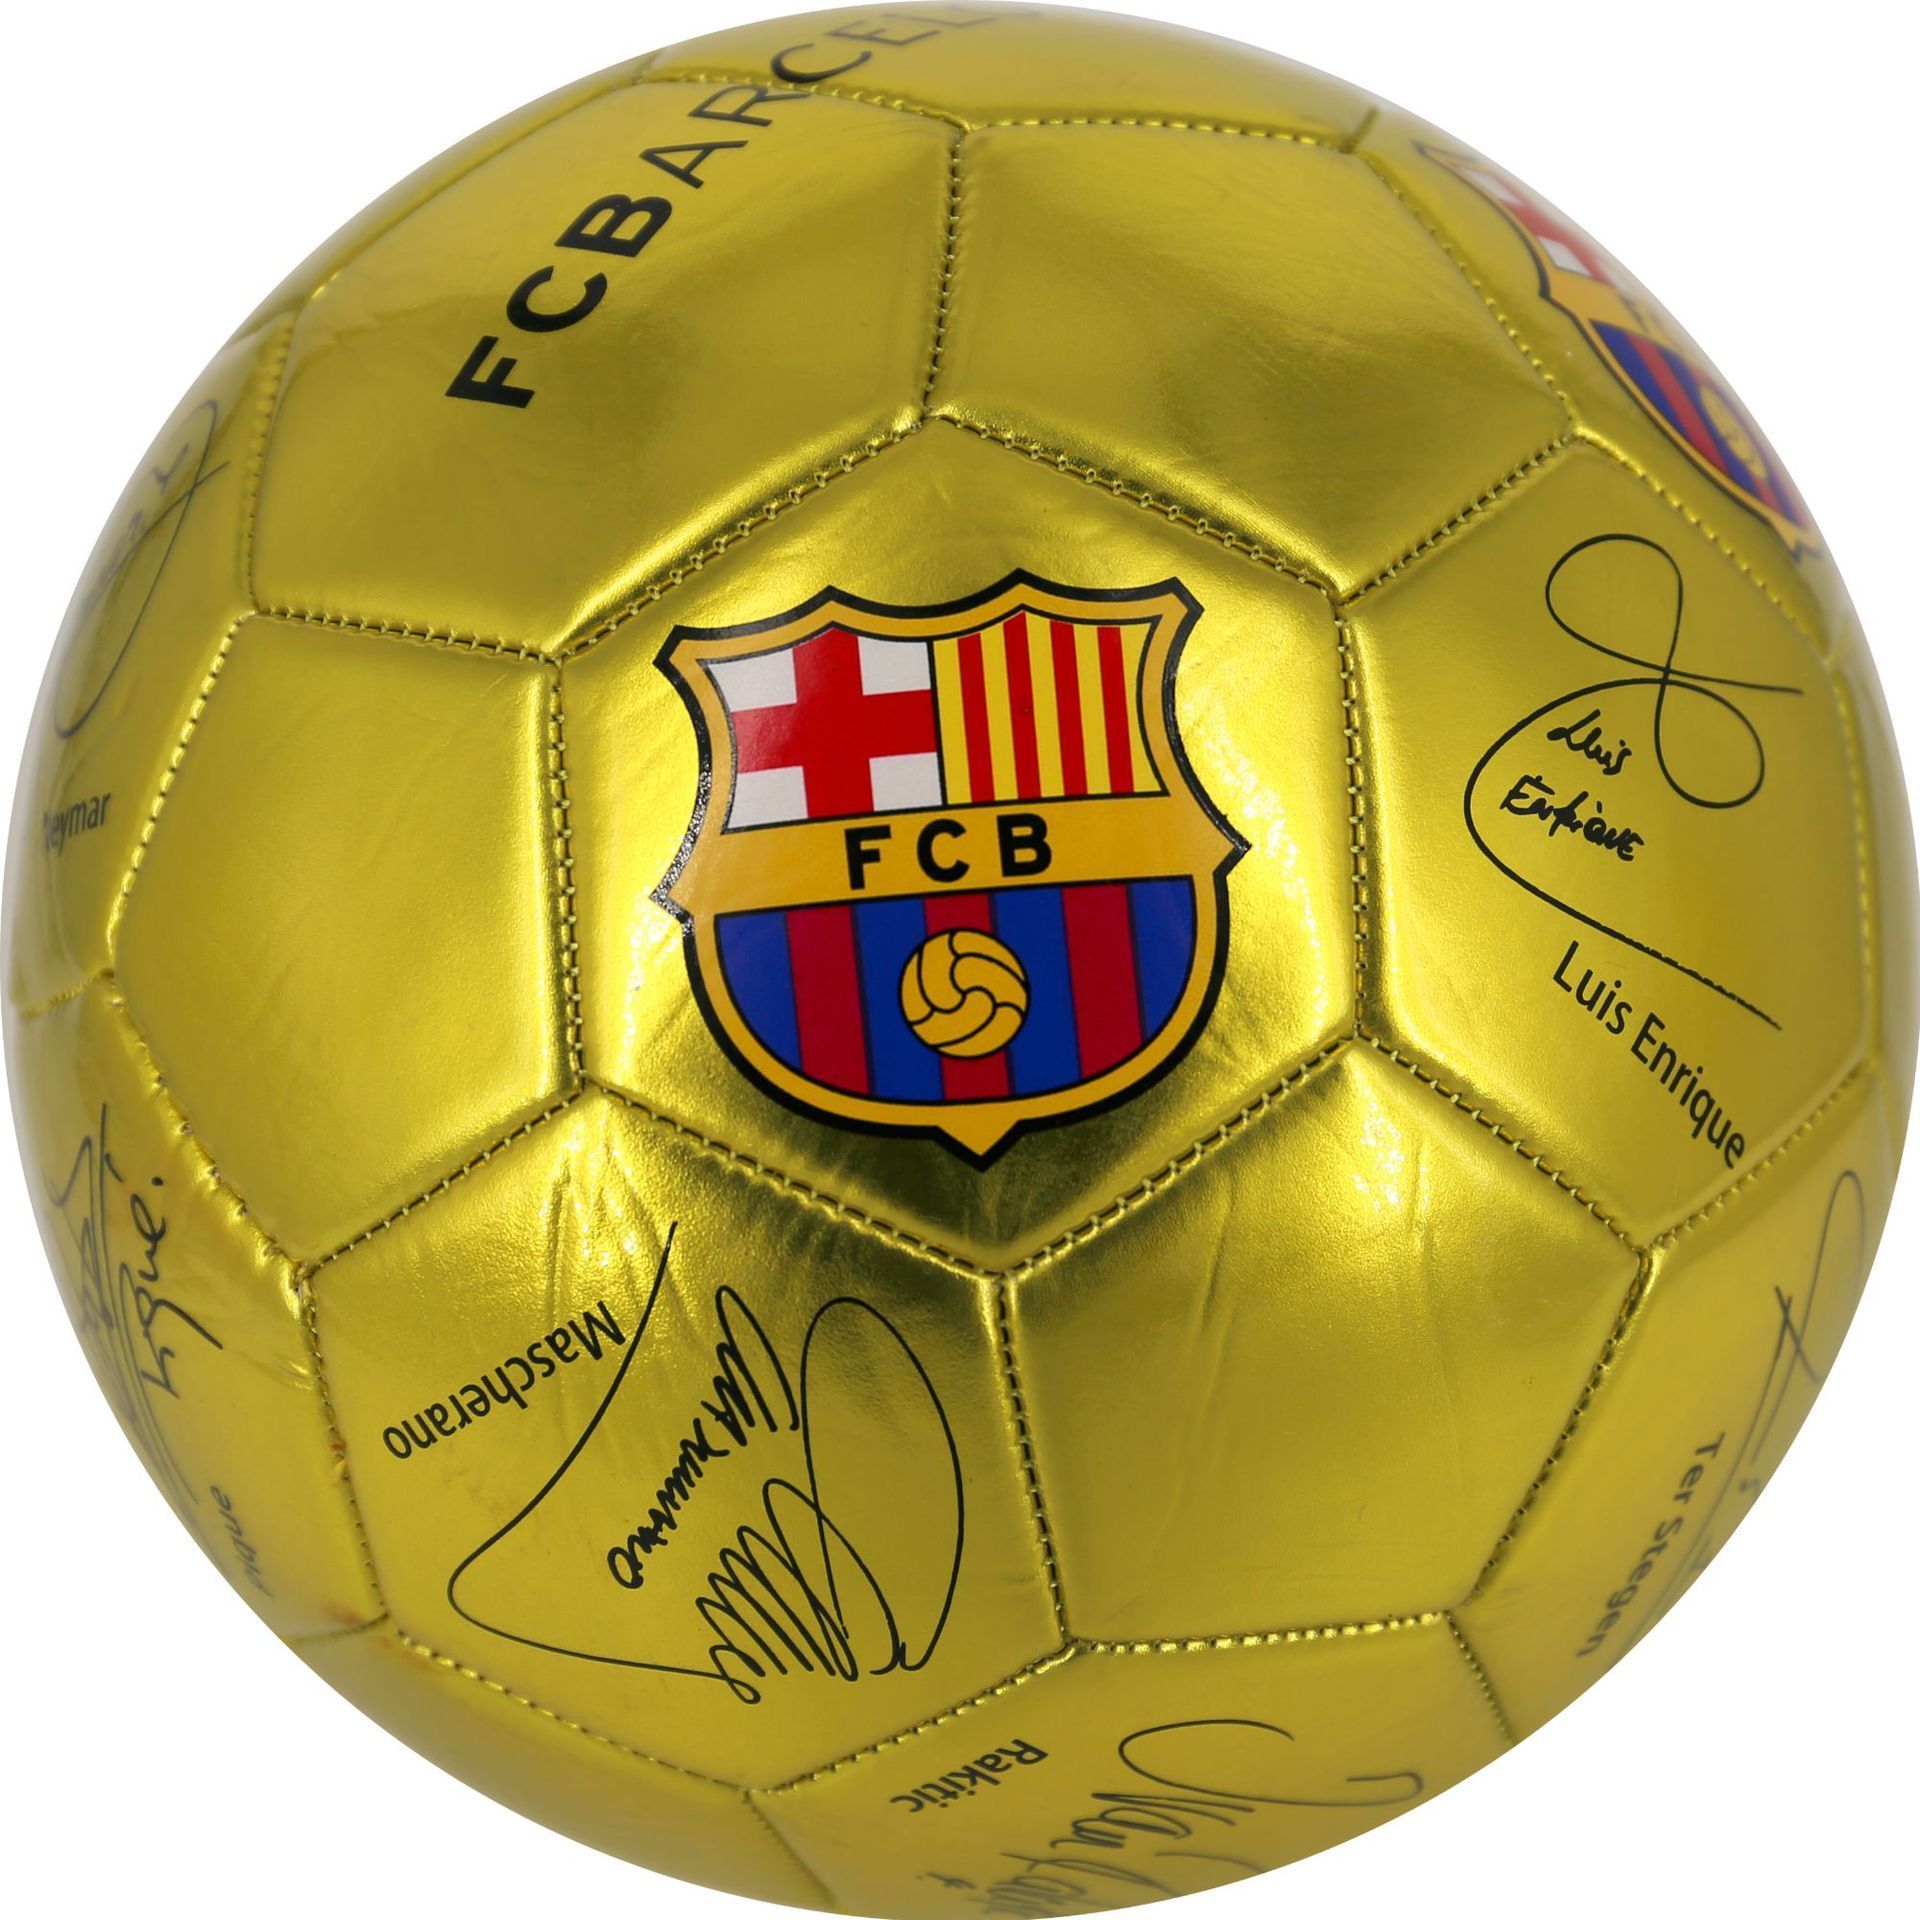 Месси с мячом. Barcelona Messi золотой мяч. Футбольный мяч Месси. Барселона FCB мячик. Мяч 5 рублей